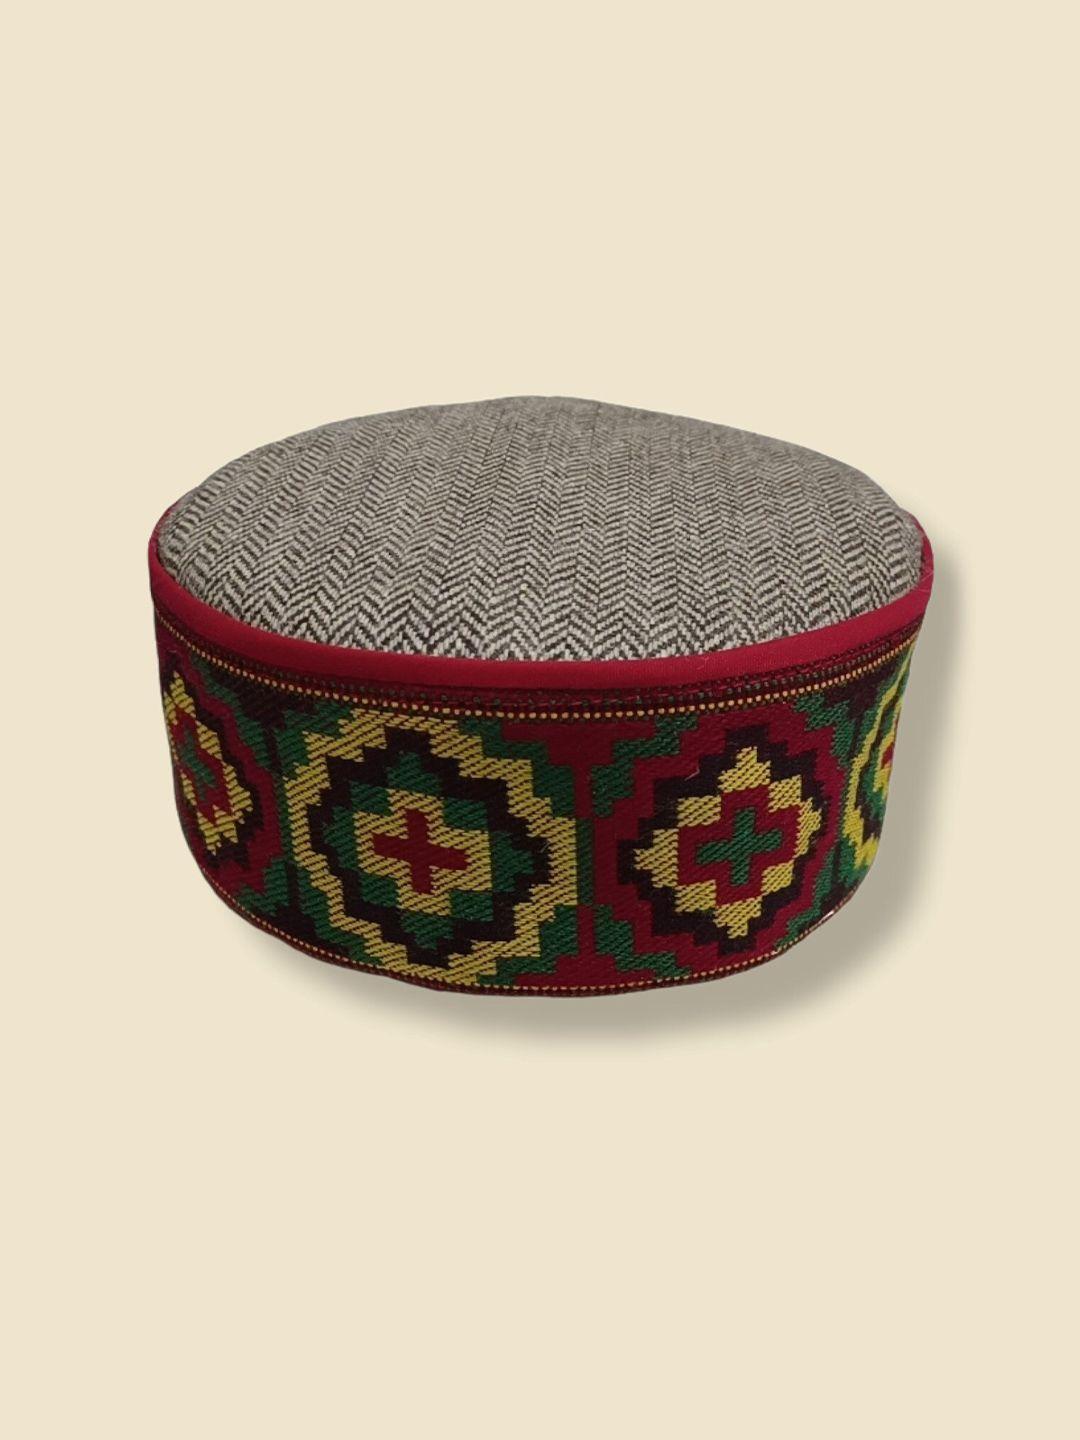 vastraa fusion embroidered himachali kullu topi woollen cap